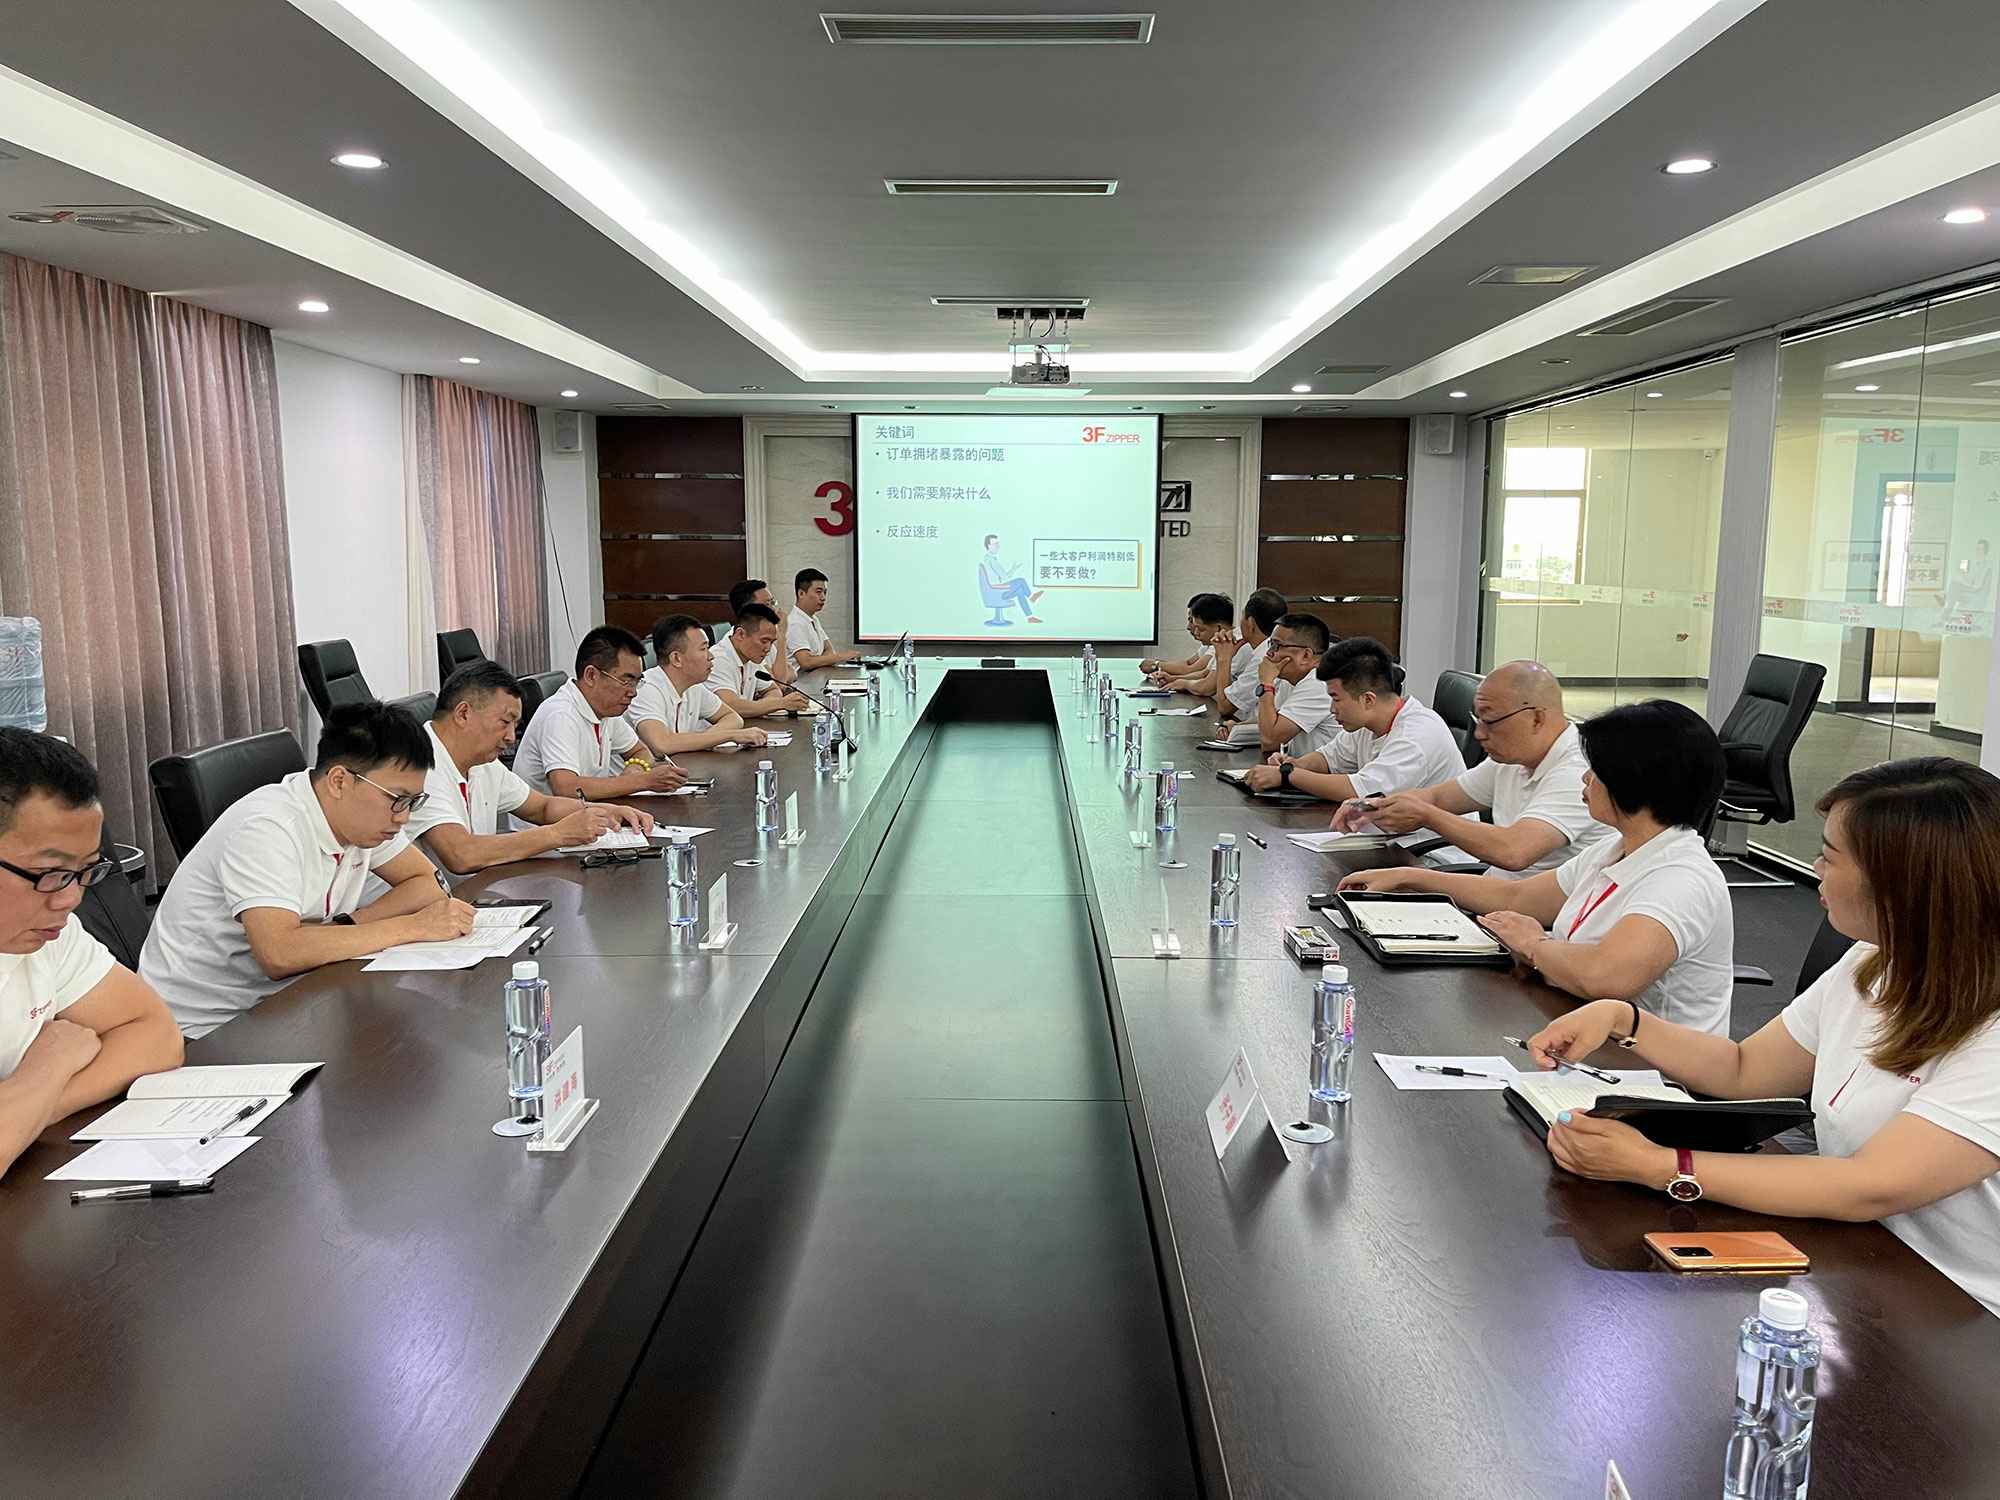 hg皇冠手机官网(中国)有限公司召开上半年总结暨下半年计划会议